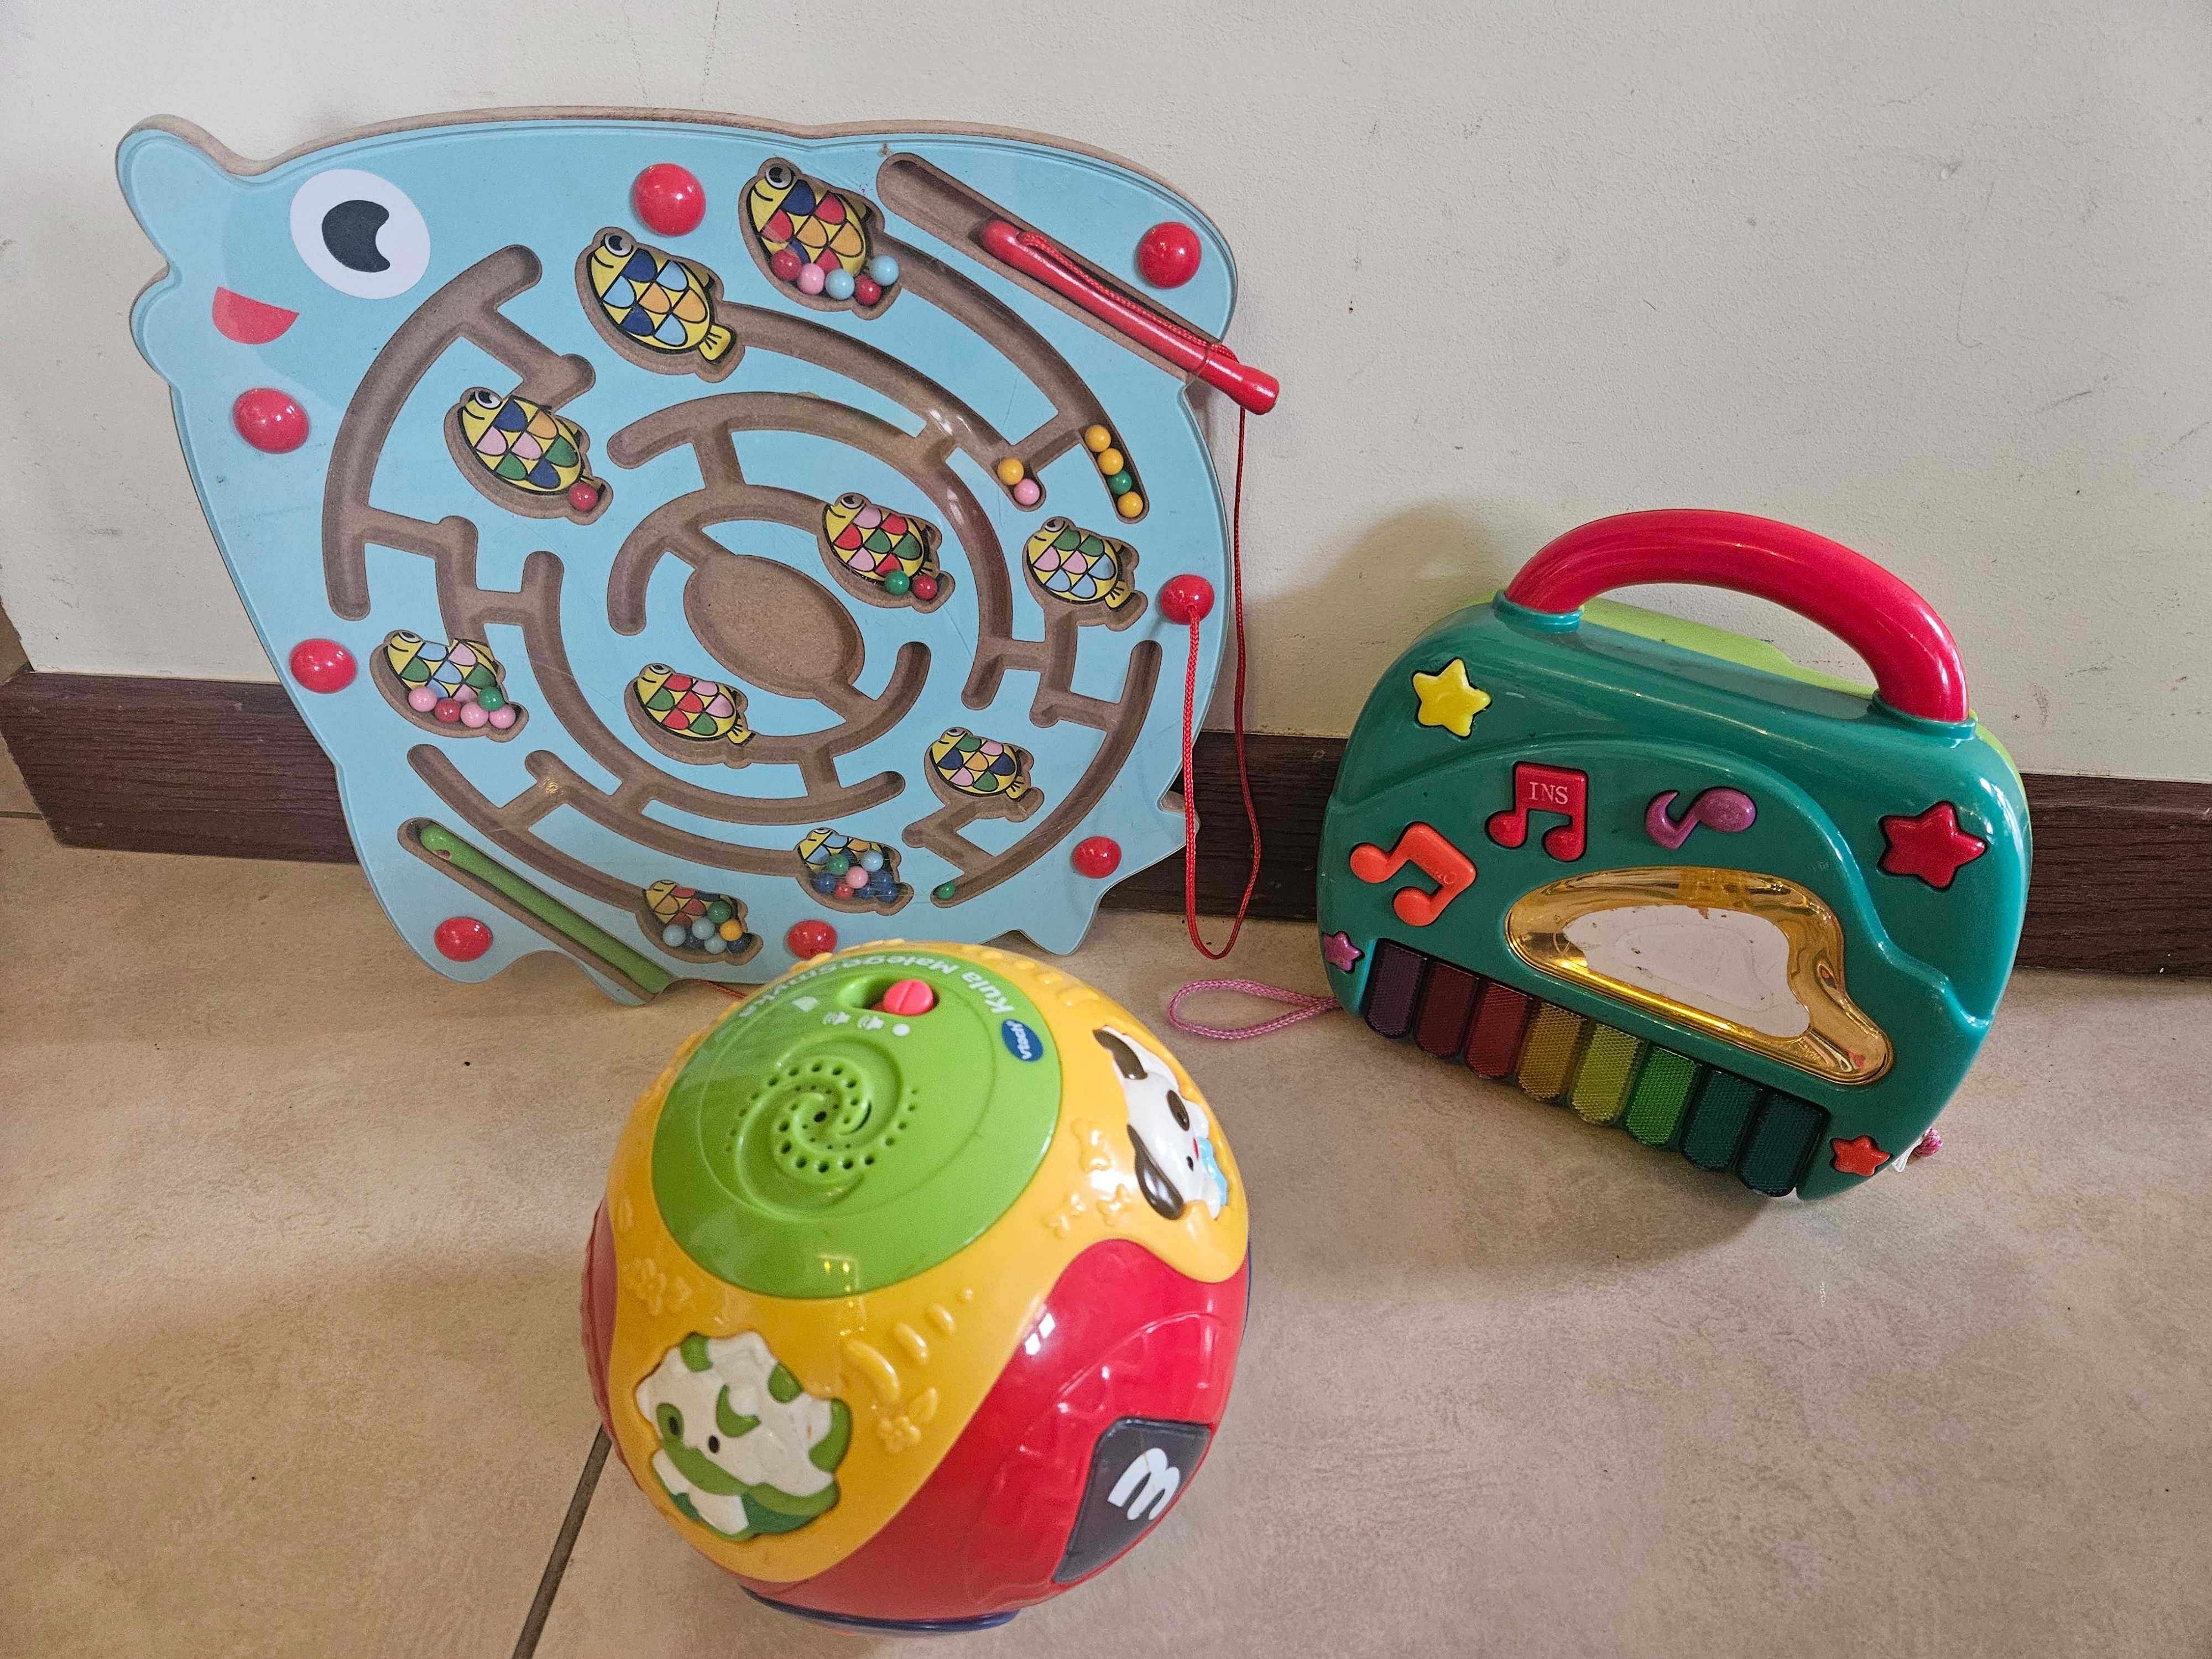 Zabawki dla dziecka - wiek 1+